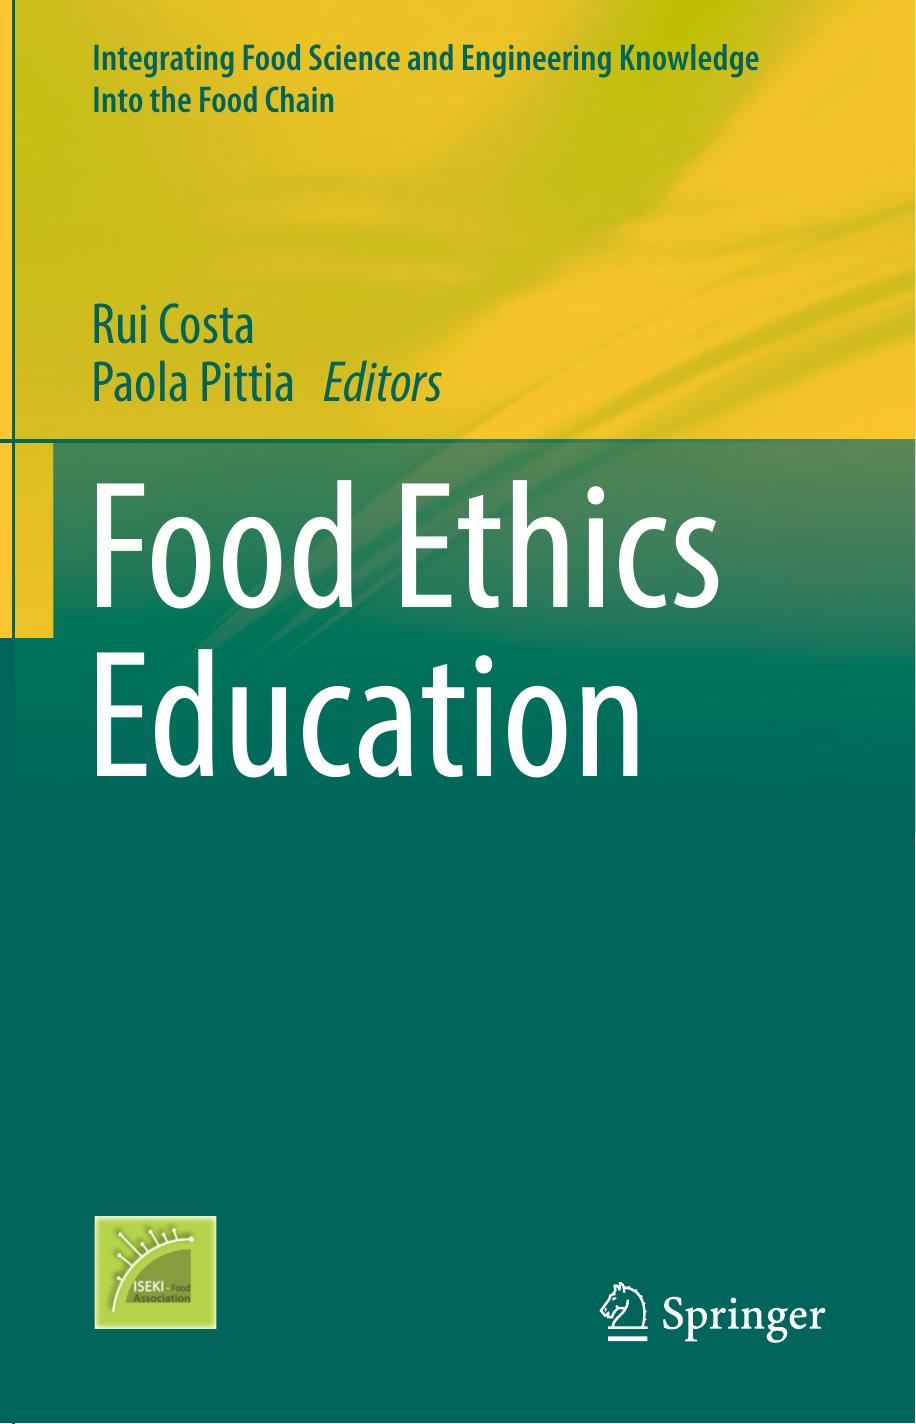 Food Ethics Education-Springer International Publishing (2018)